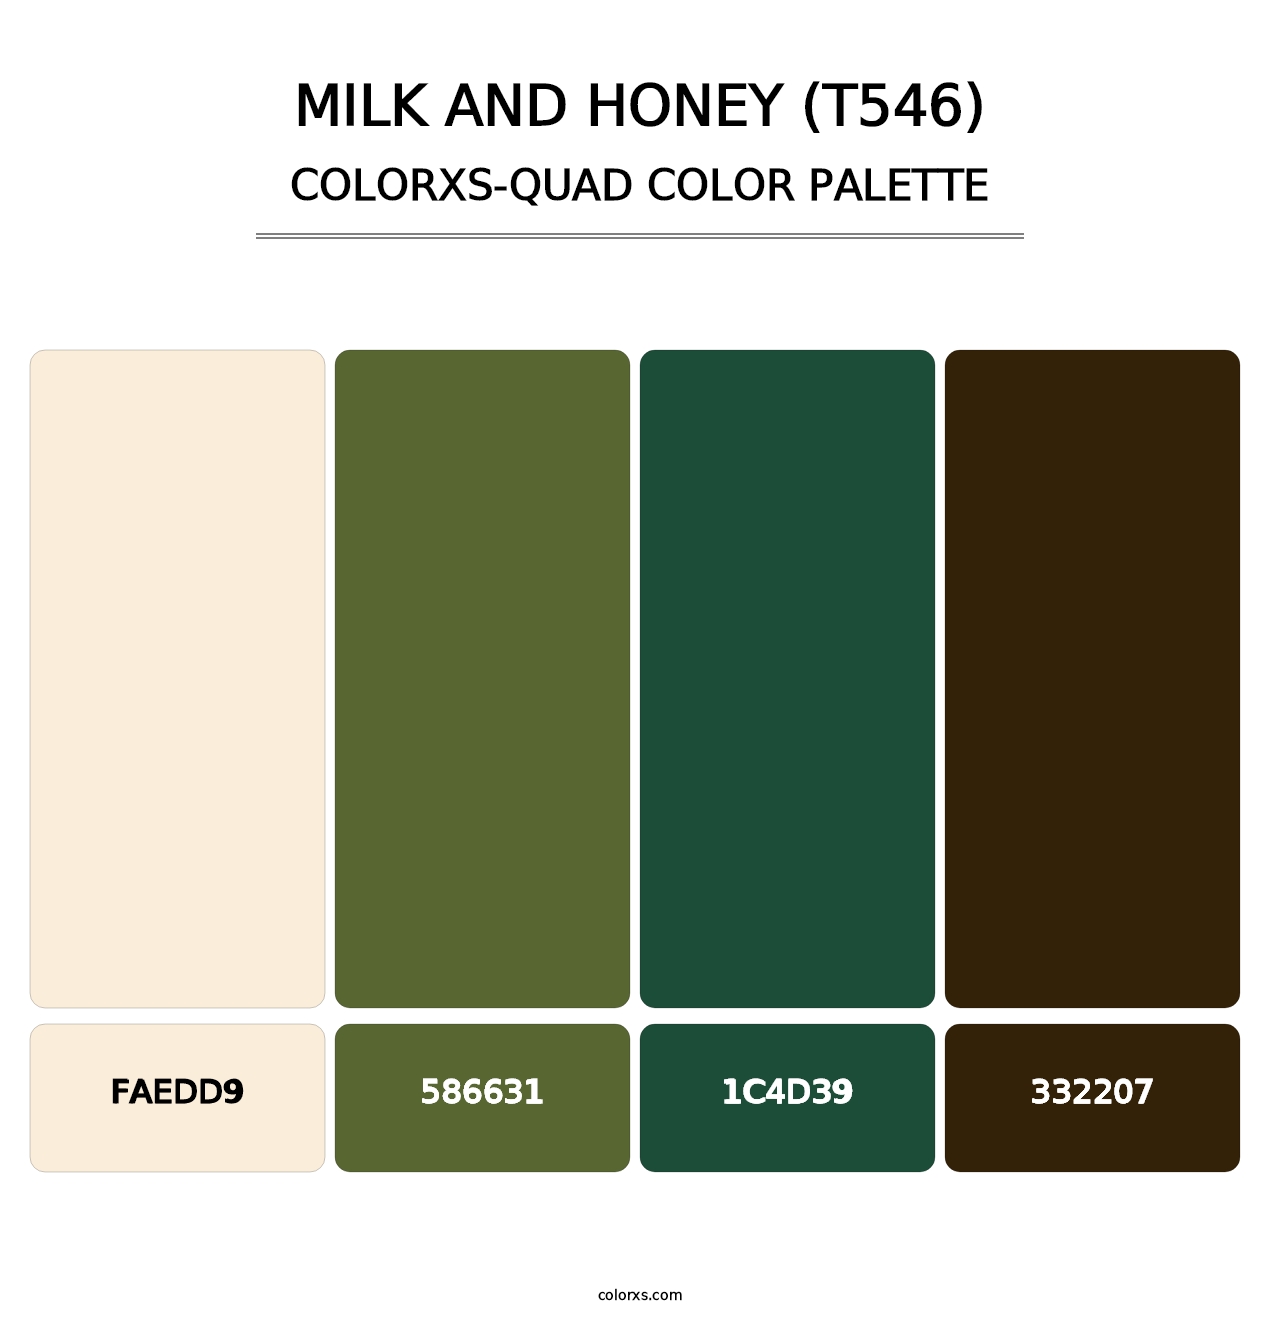 Milk and Honey (T546) - Colorxs Quad Palette